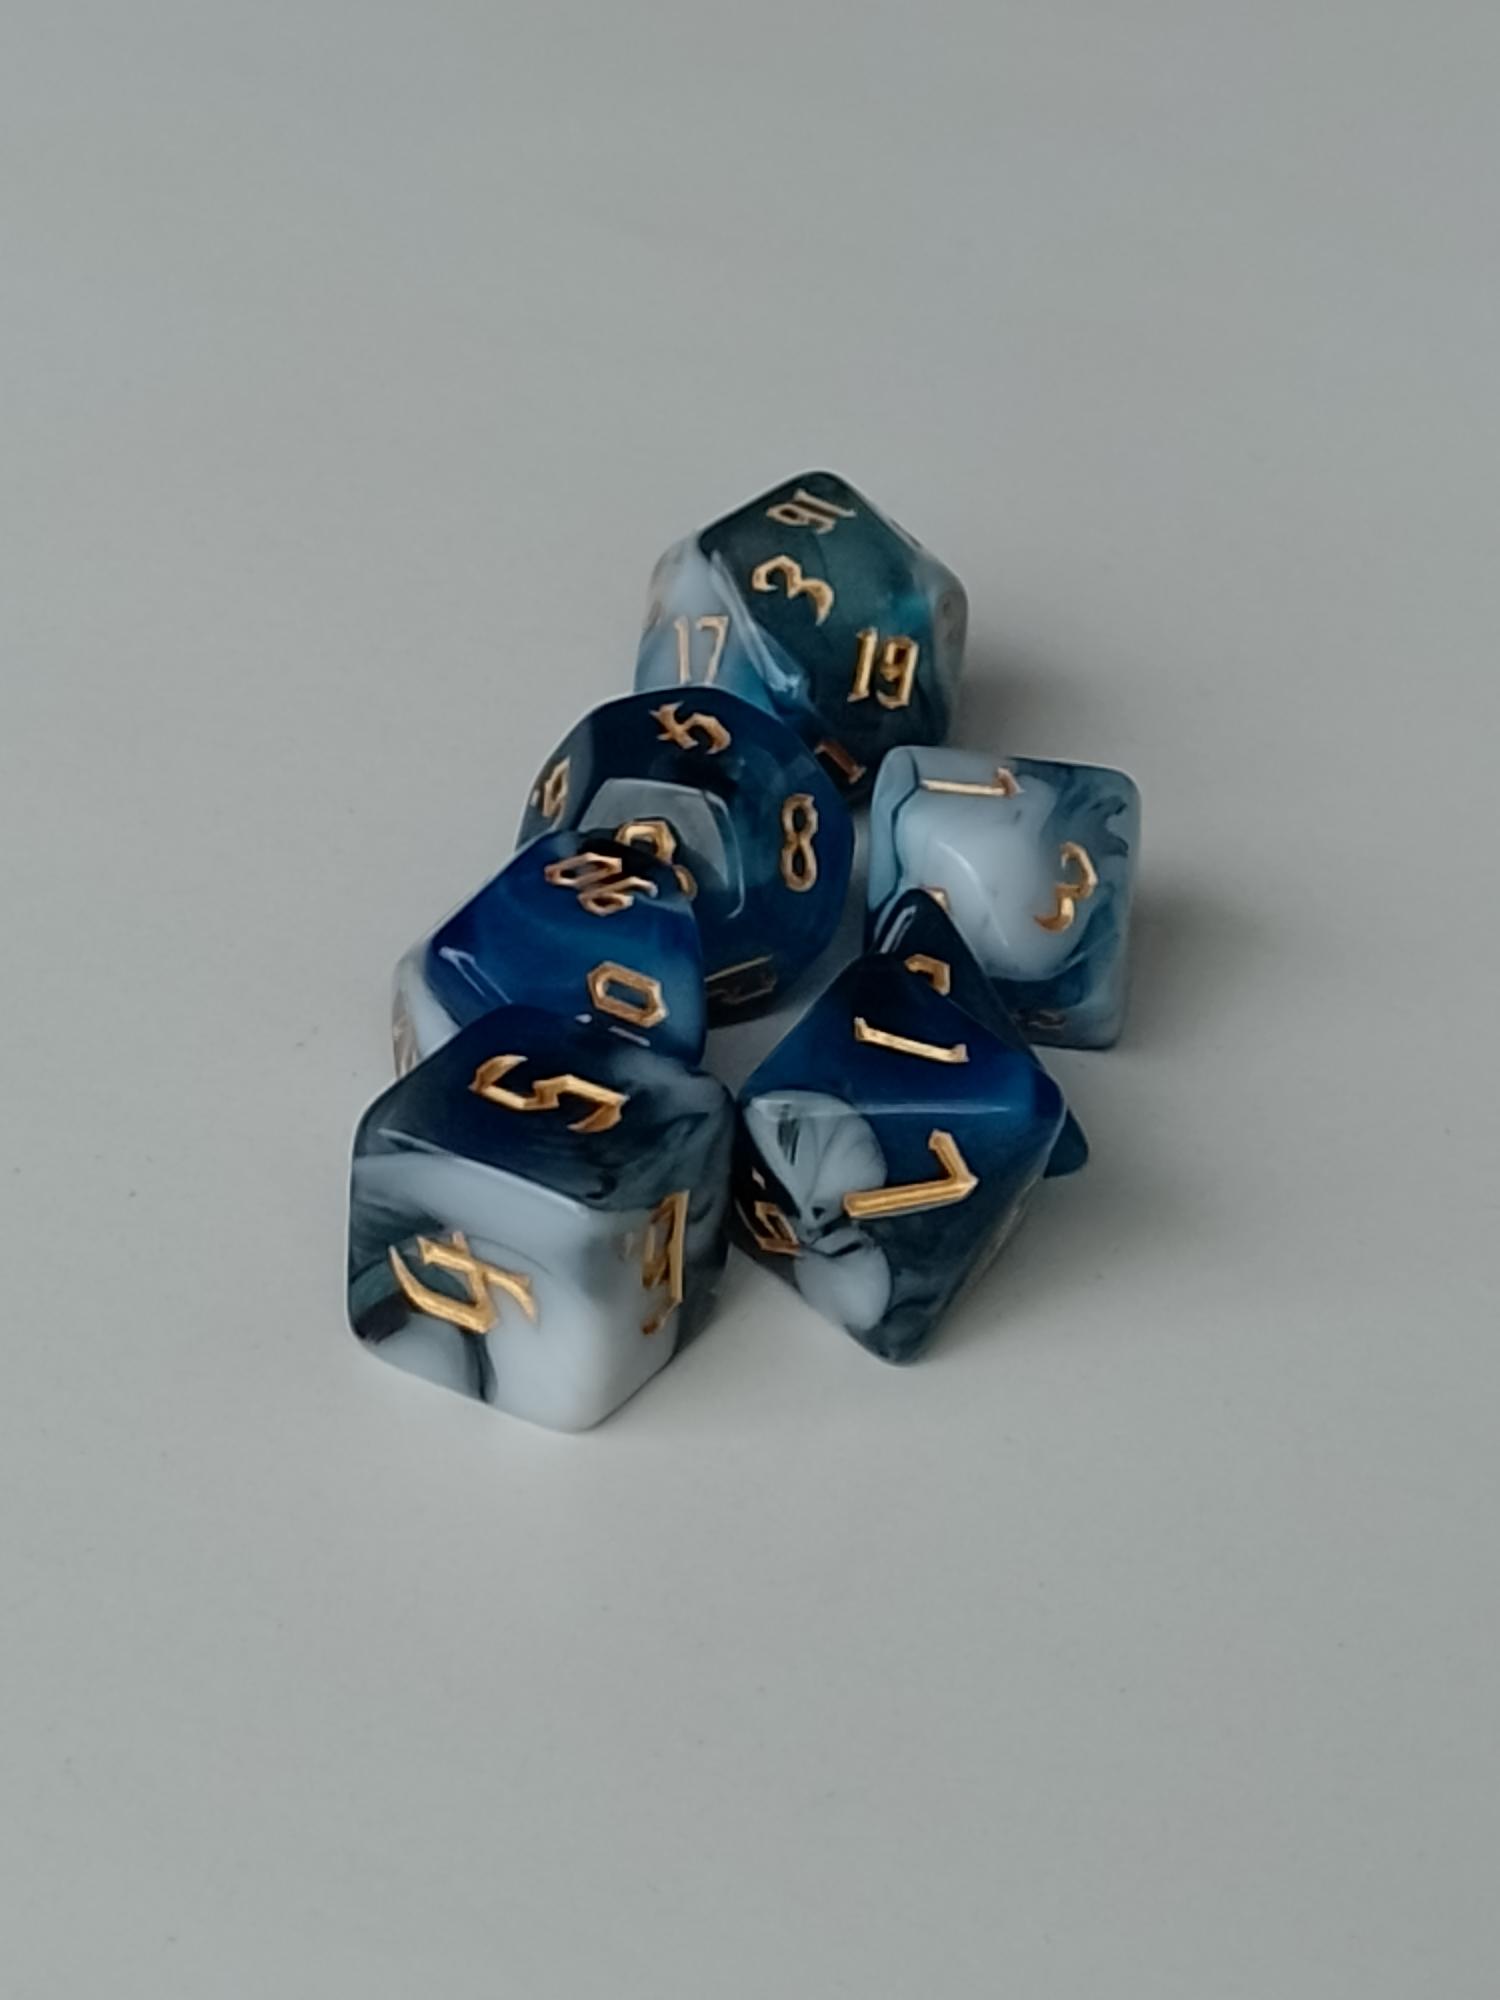  RPG Dice set (7) gemarmerd in wit/lichtblauw/donkerblauw